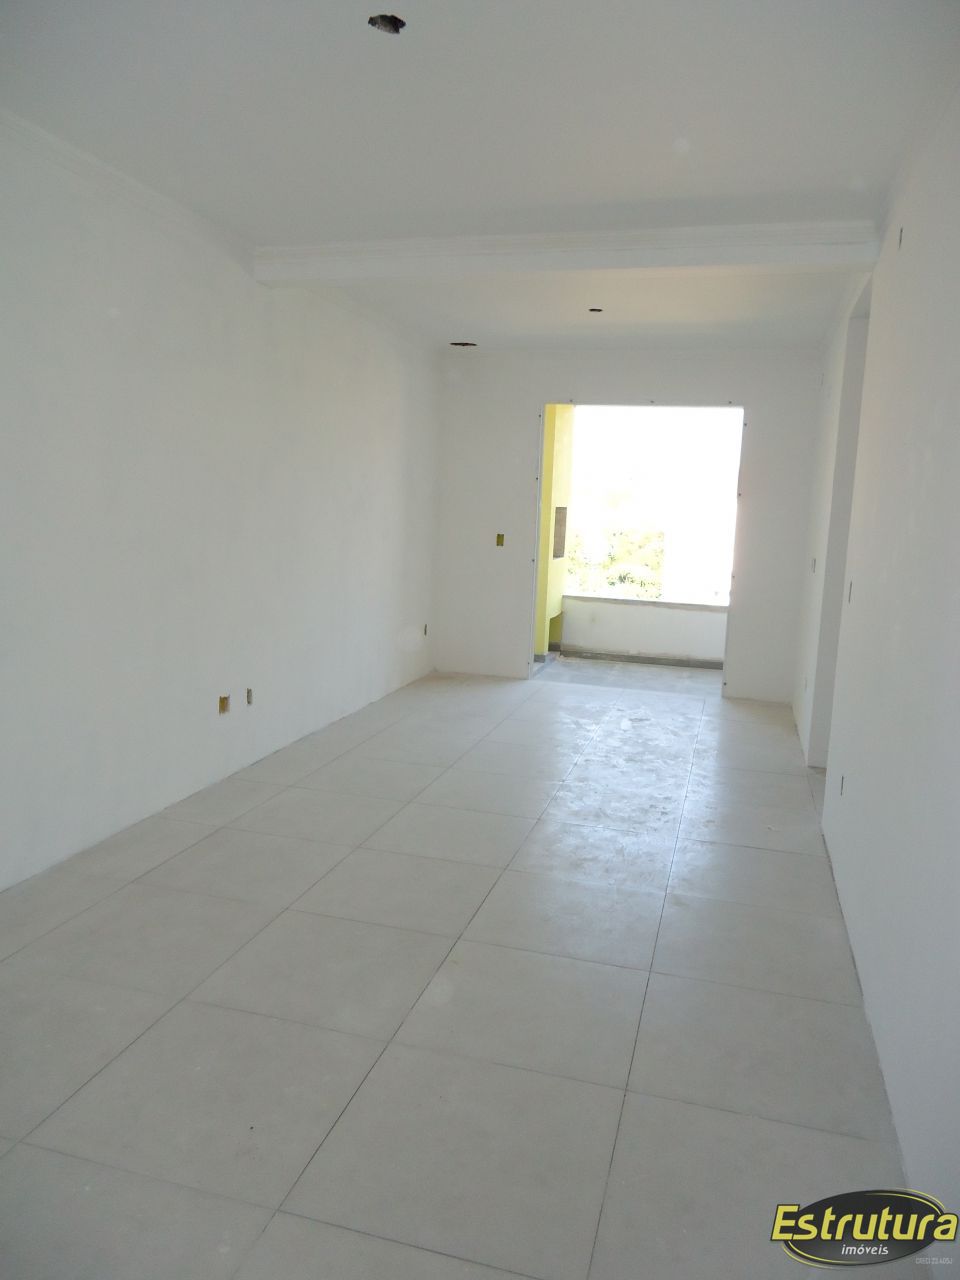 Apartamento com 2 Dormitórios à venda, 65 m² por R$ 290.000,00